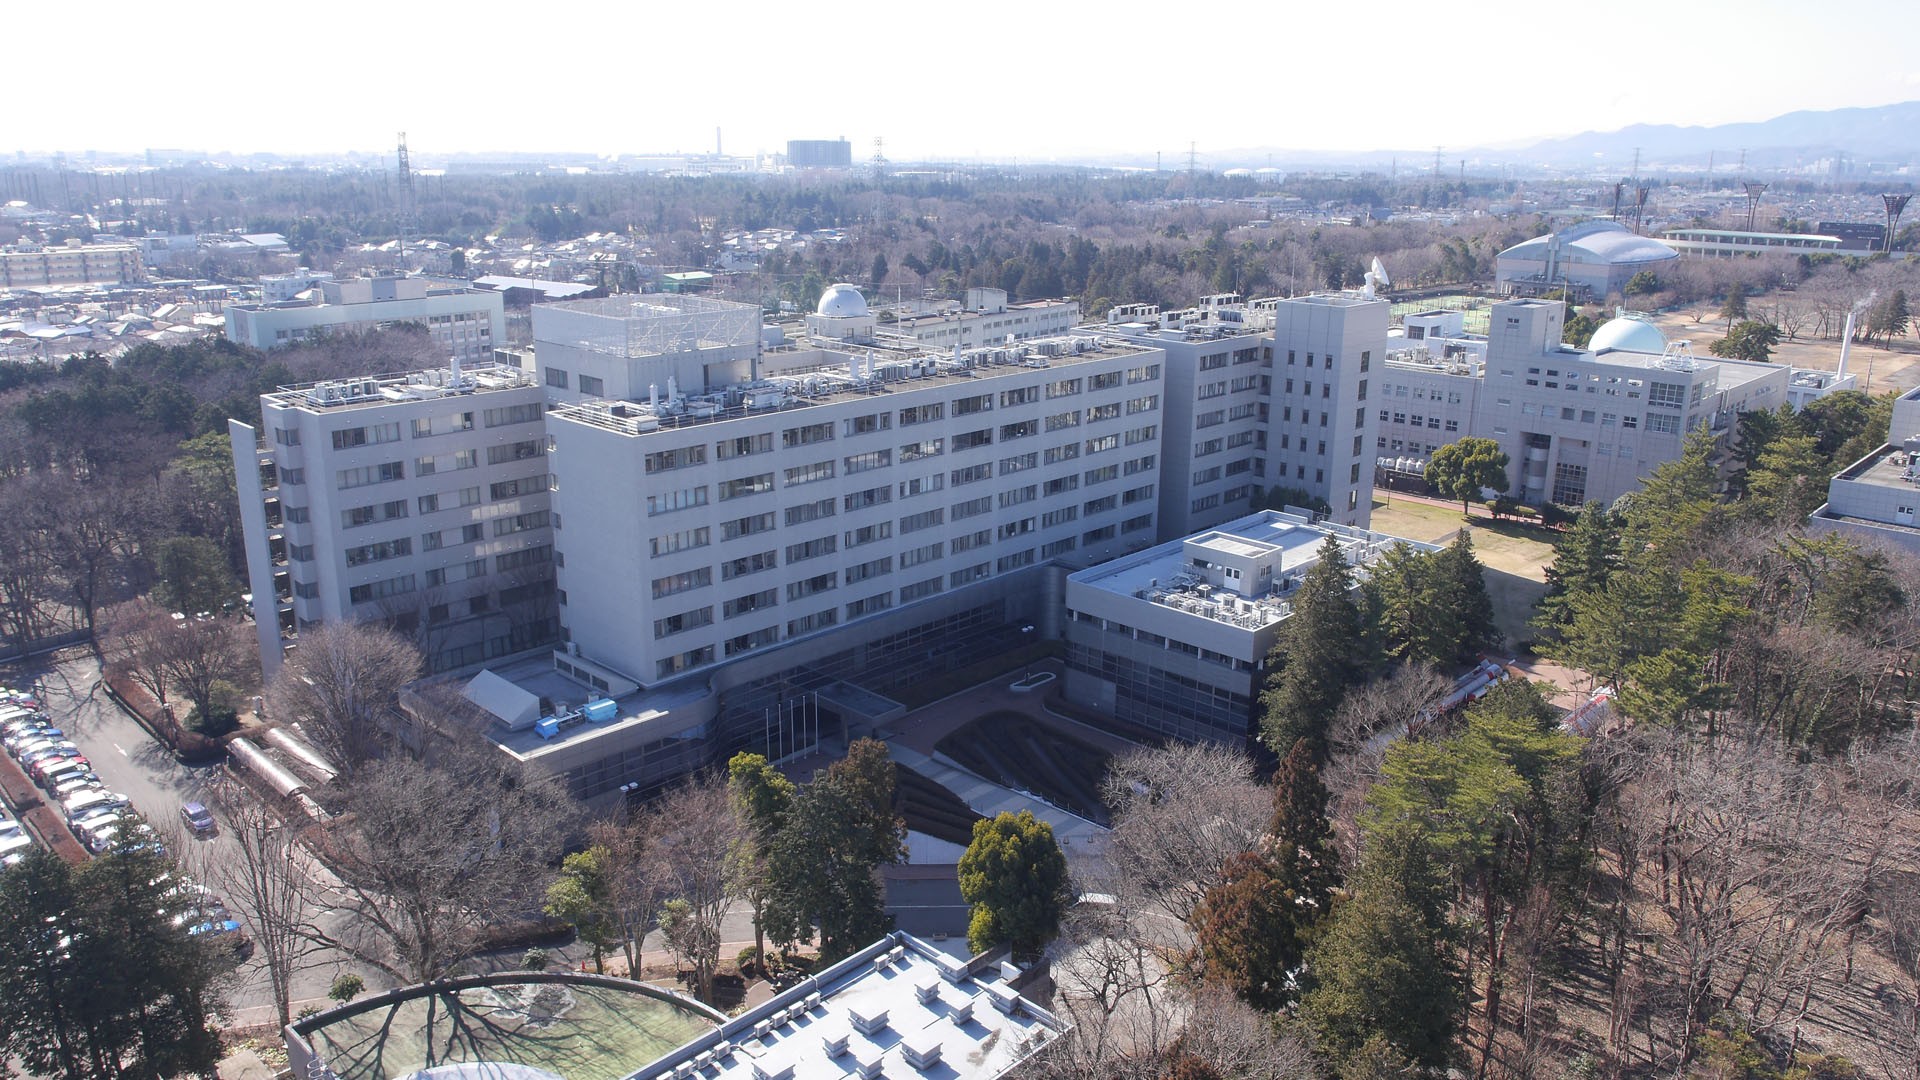 JAXA Sagamihara Campus